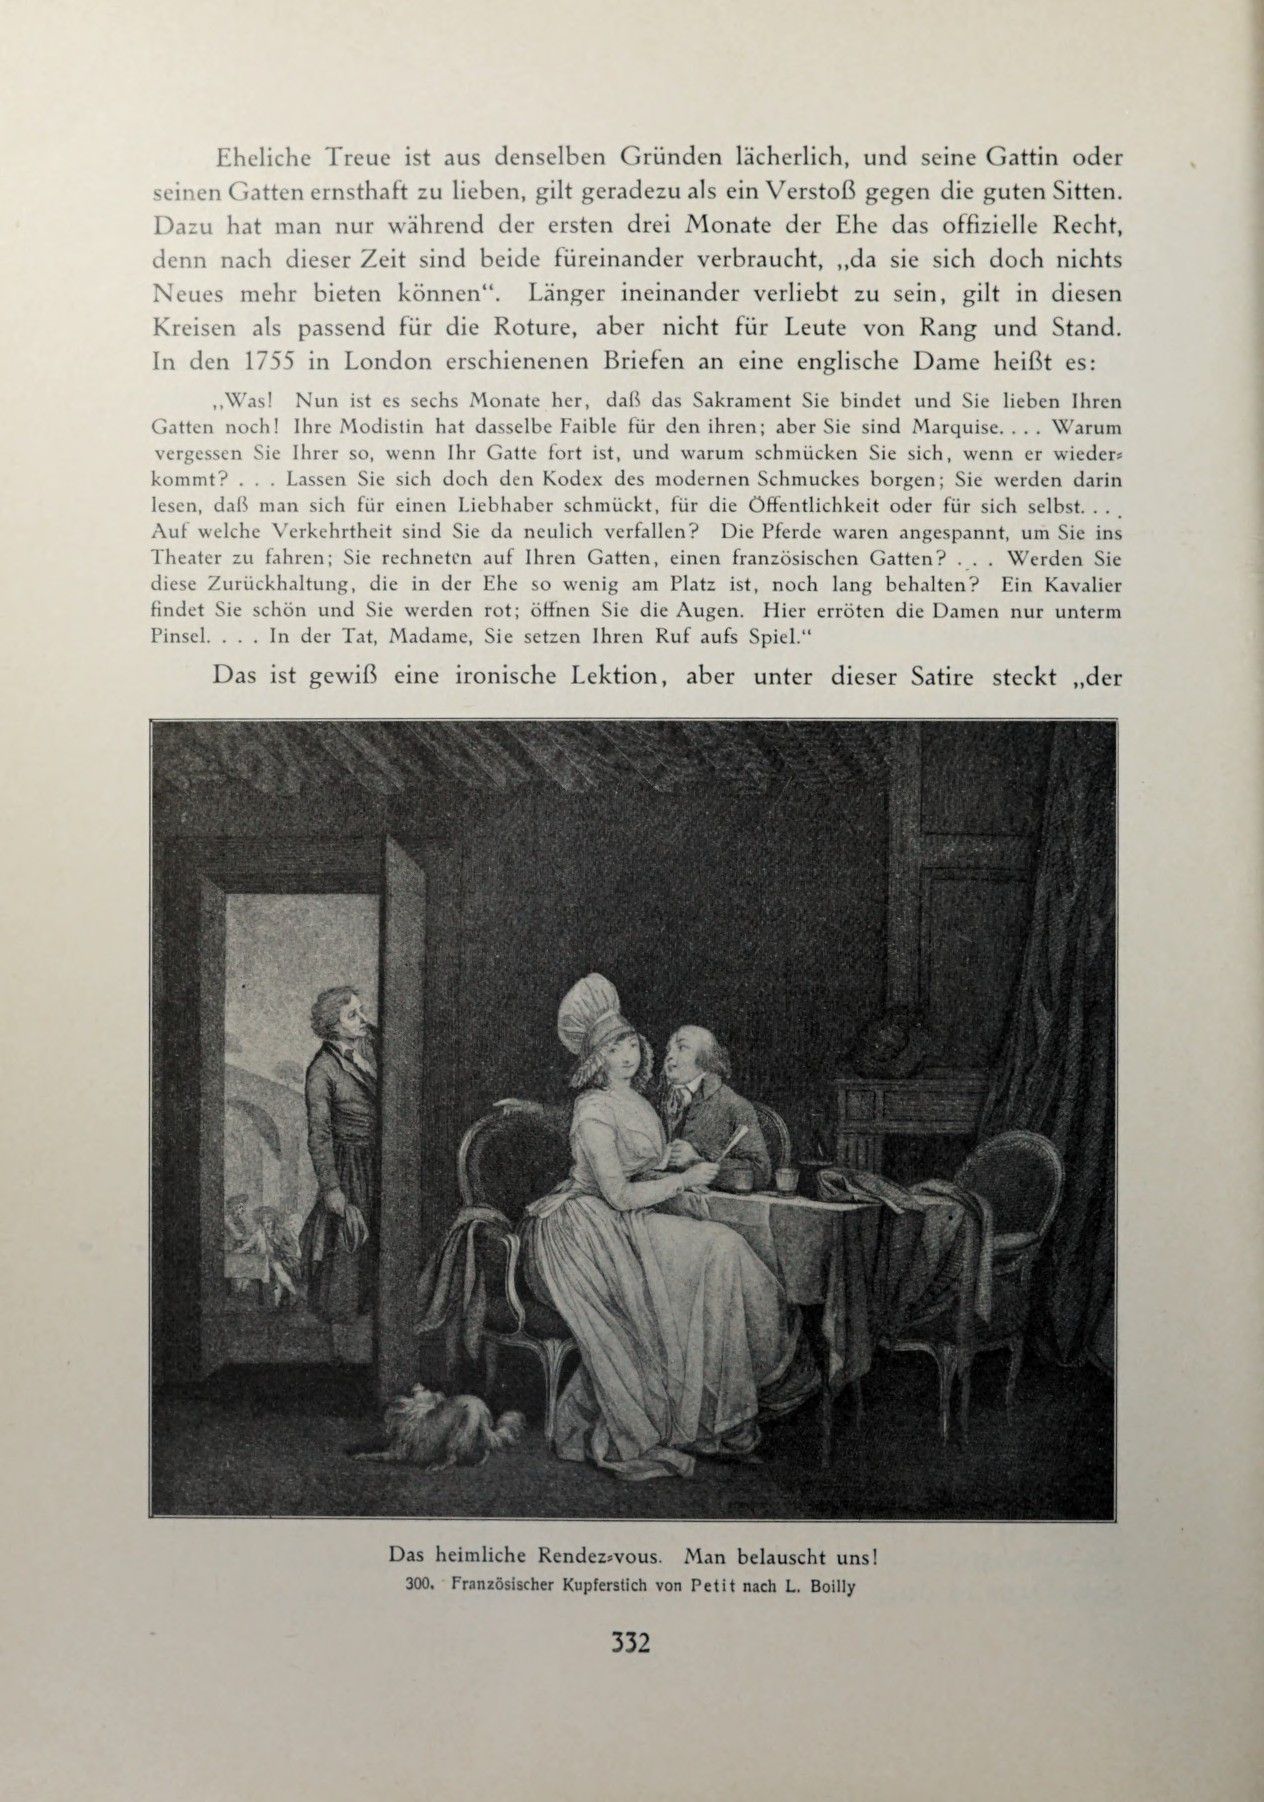 [Eduard Fuchs] Illustrierte Sittengeschichte vom Mittelalter bis zur Gegenwart: Bd. 2. and Ergänzungsband. Die galante Zeit [German] 483